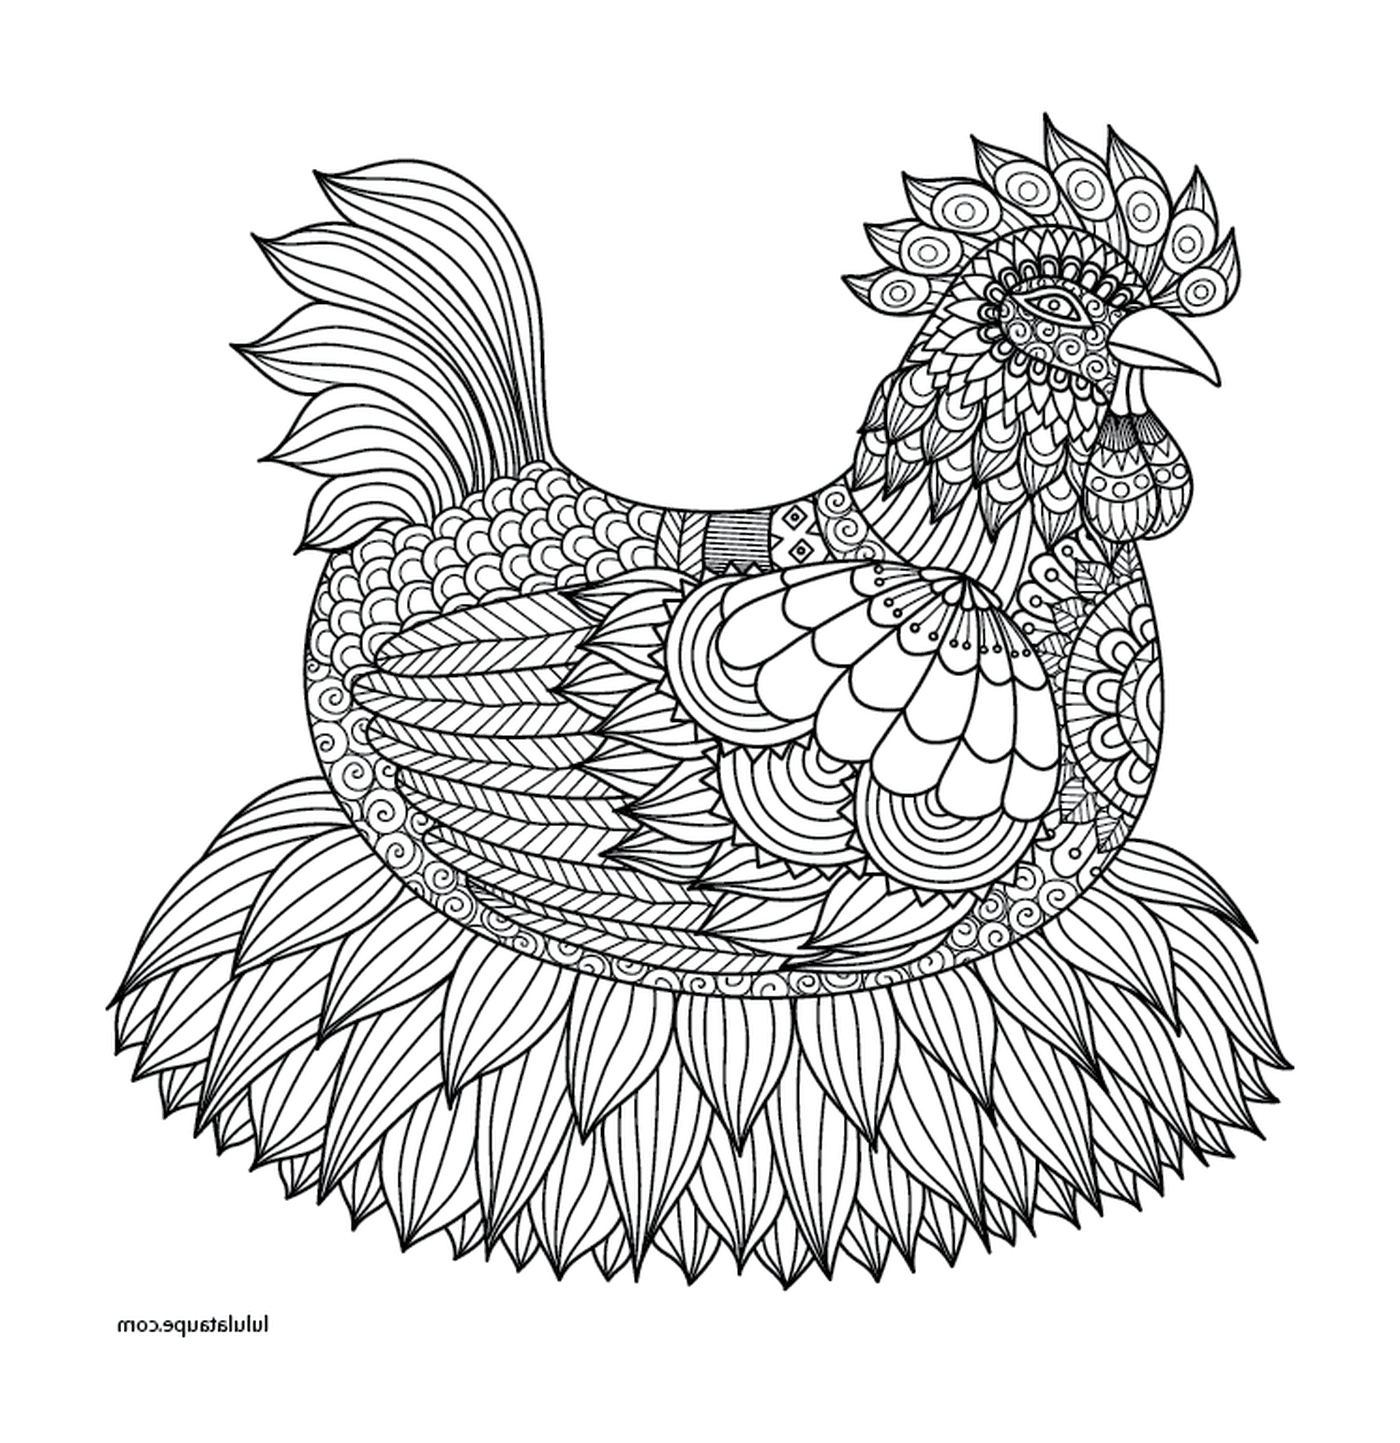  Элегантно сконструированная взрослая курица 